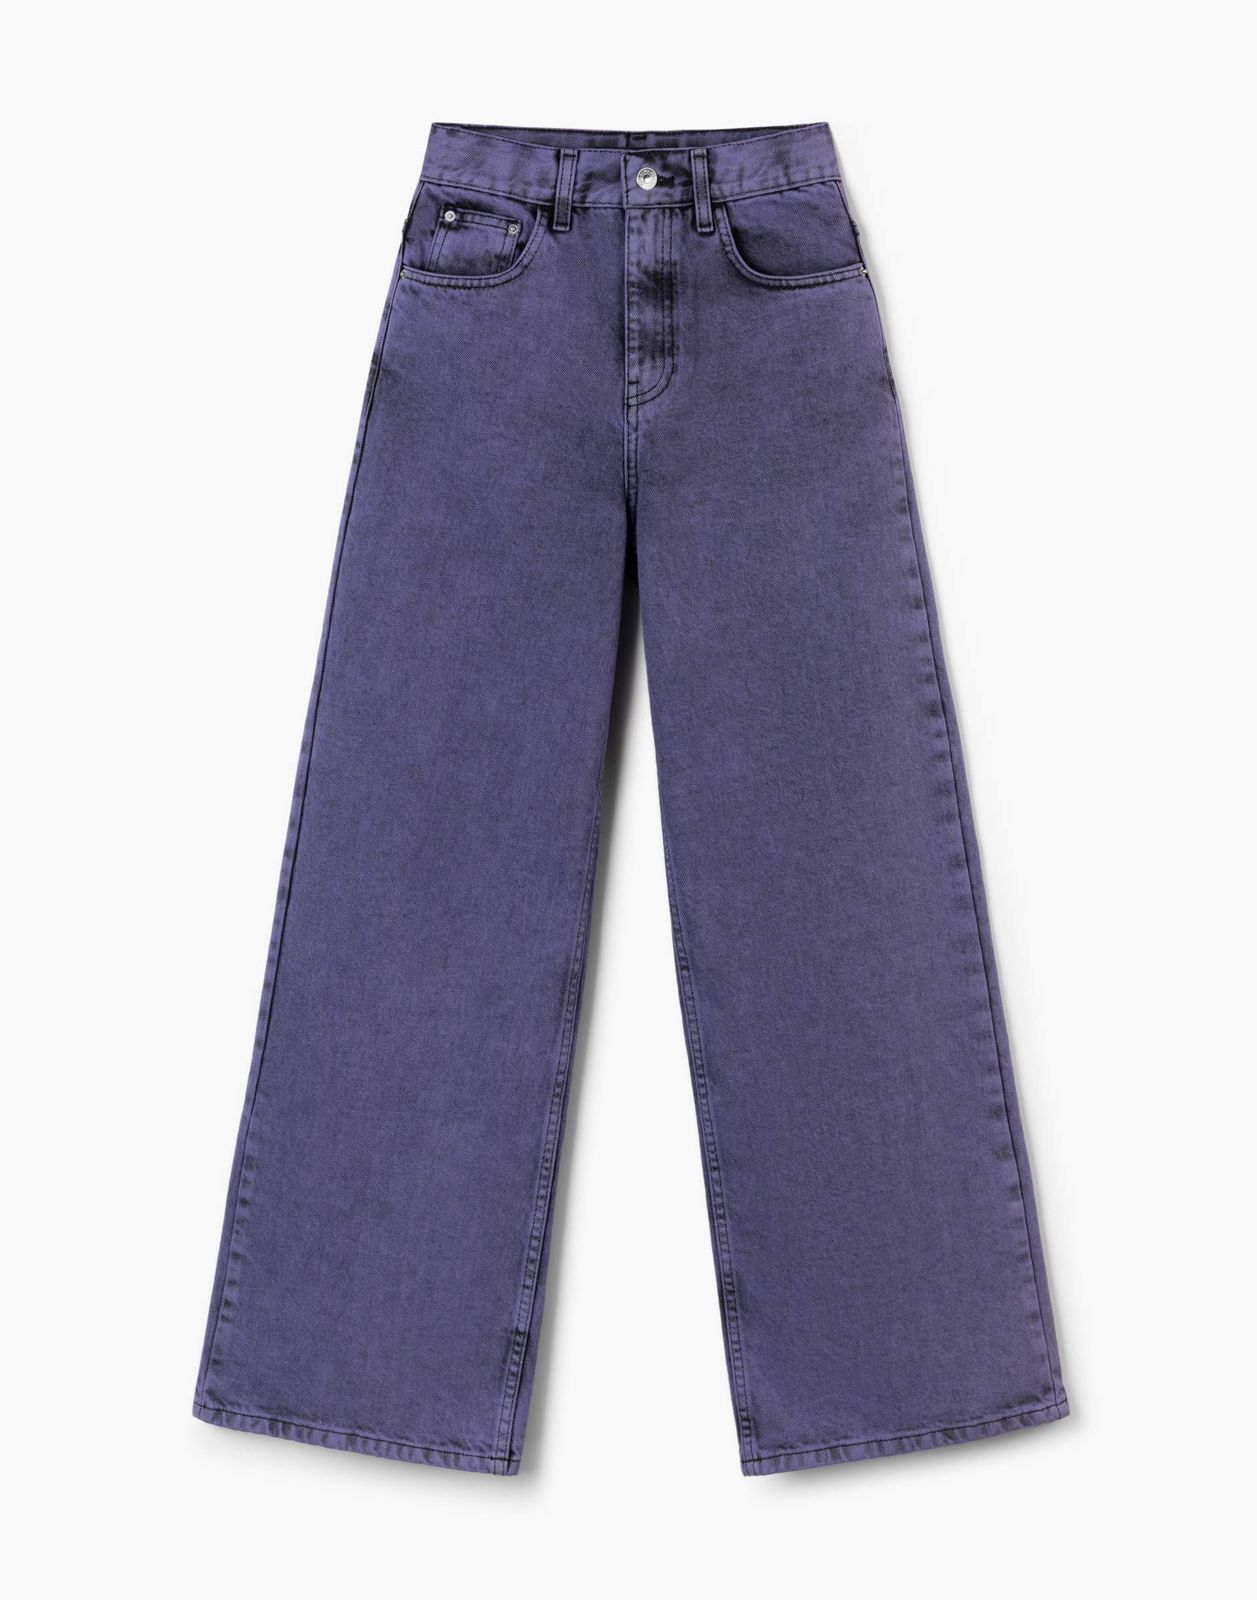 Джинсы детские Gloria Jeans GJN031150, черный/фиолетовый, 128